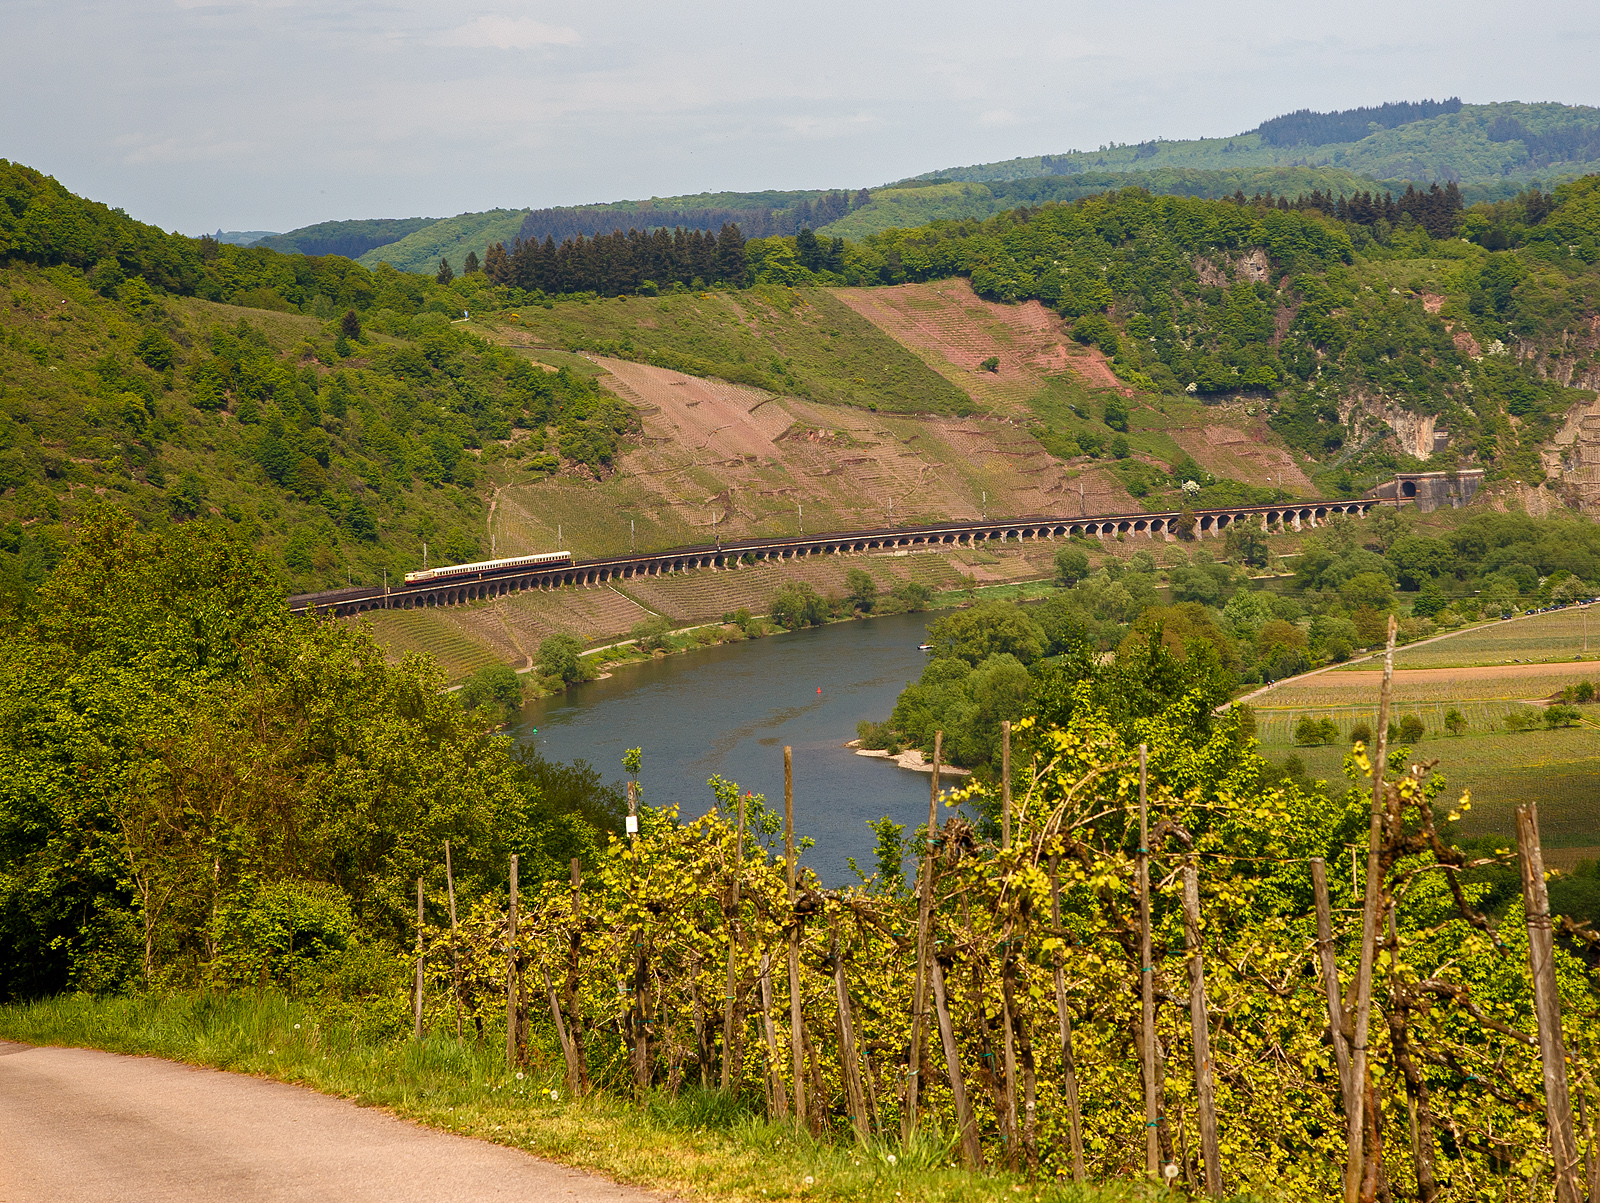 Dampfspektakel 2018 - Die 103 113-7 (91 80 6103 113-7 D-DB) vom DB-Museums in Koblenz fährt am 29.04.2018, mit ihrem kurzem TEE (Trans Europ Express) Koblenz - Wittlich - Trier, auf dem Pündericher Hangviadukt in Richtung Trier.

Der 786 m lange Pündericher Hangviadukt auf der Moselstrecke gegenüber von Pünderich an der Mosel ist der längste Hangviadukt in Deutschland. Unmittelbar am nördlichen Ende des Viaduktes beginnt der Prinzenkopftunnel (hier rechts im Bild). Der Hangviadukt ist etwa zehn Meter hoch und weist 92 Bögen auf. Jeder der Bögen hat eine lichte Weite von 7,20 m, die Pfeiler sind 1,30 m stark. Die Brücke besteht aus Bruchsteinen aus einem nahegelegenen Steinbruch und Ziegelsteinen, die von Ziegeleien aus Merl und St. Wendel geliefert wurden. Insgesamt wurden 19.000 m3 Mauerwerk verbaut.